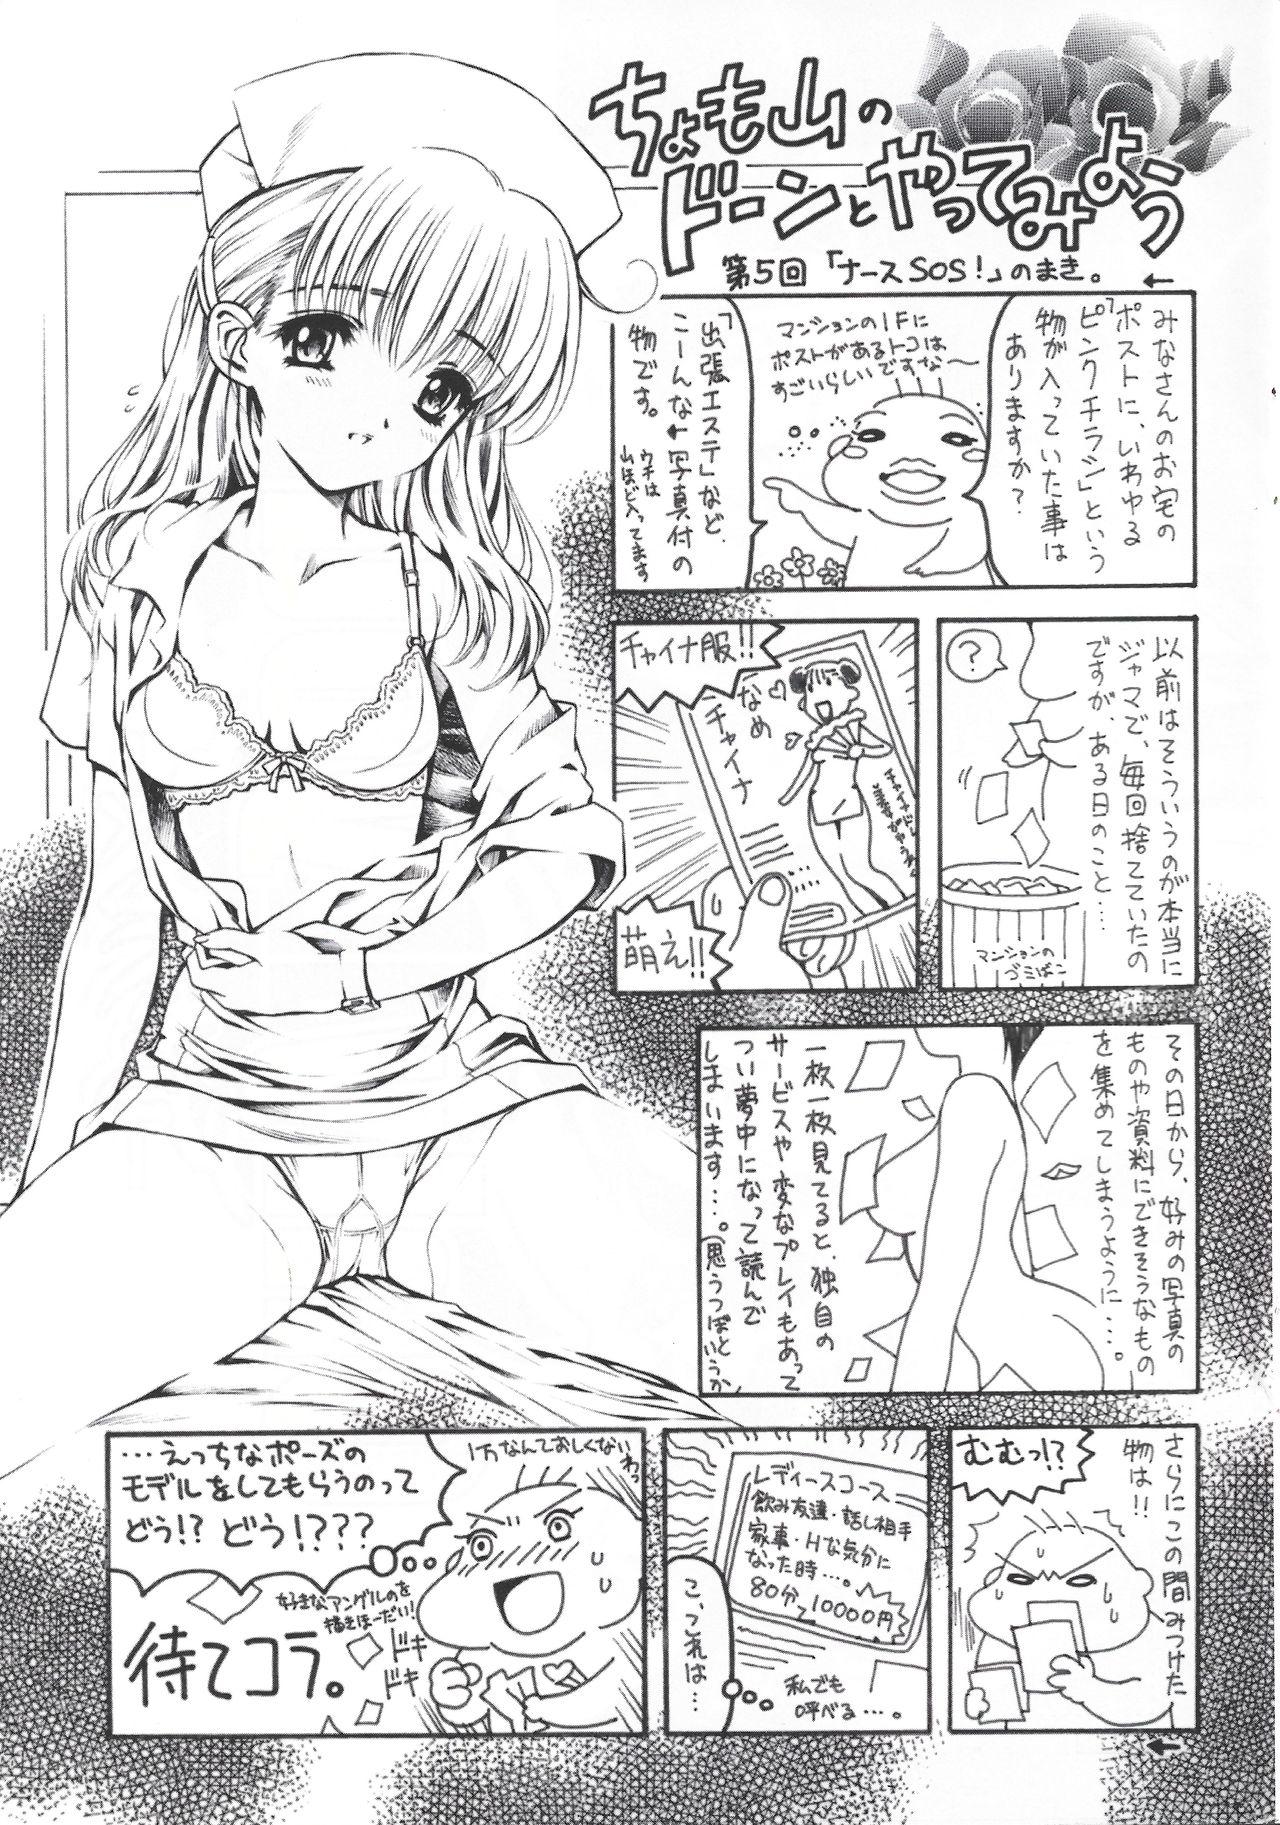 Arisu no Denchi Bakudan Vol. 17 18